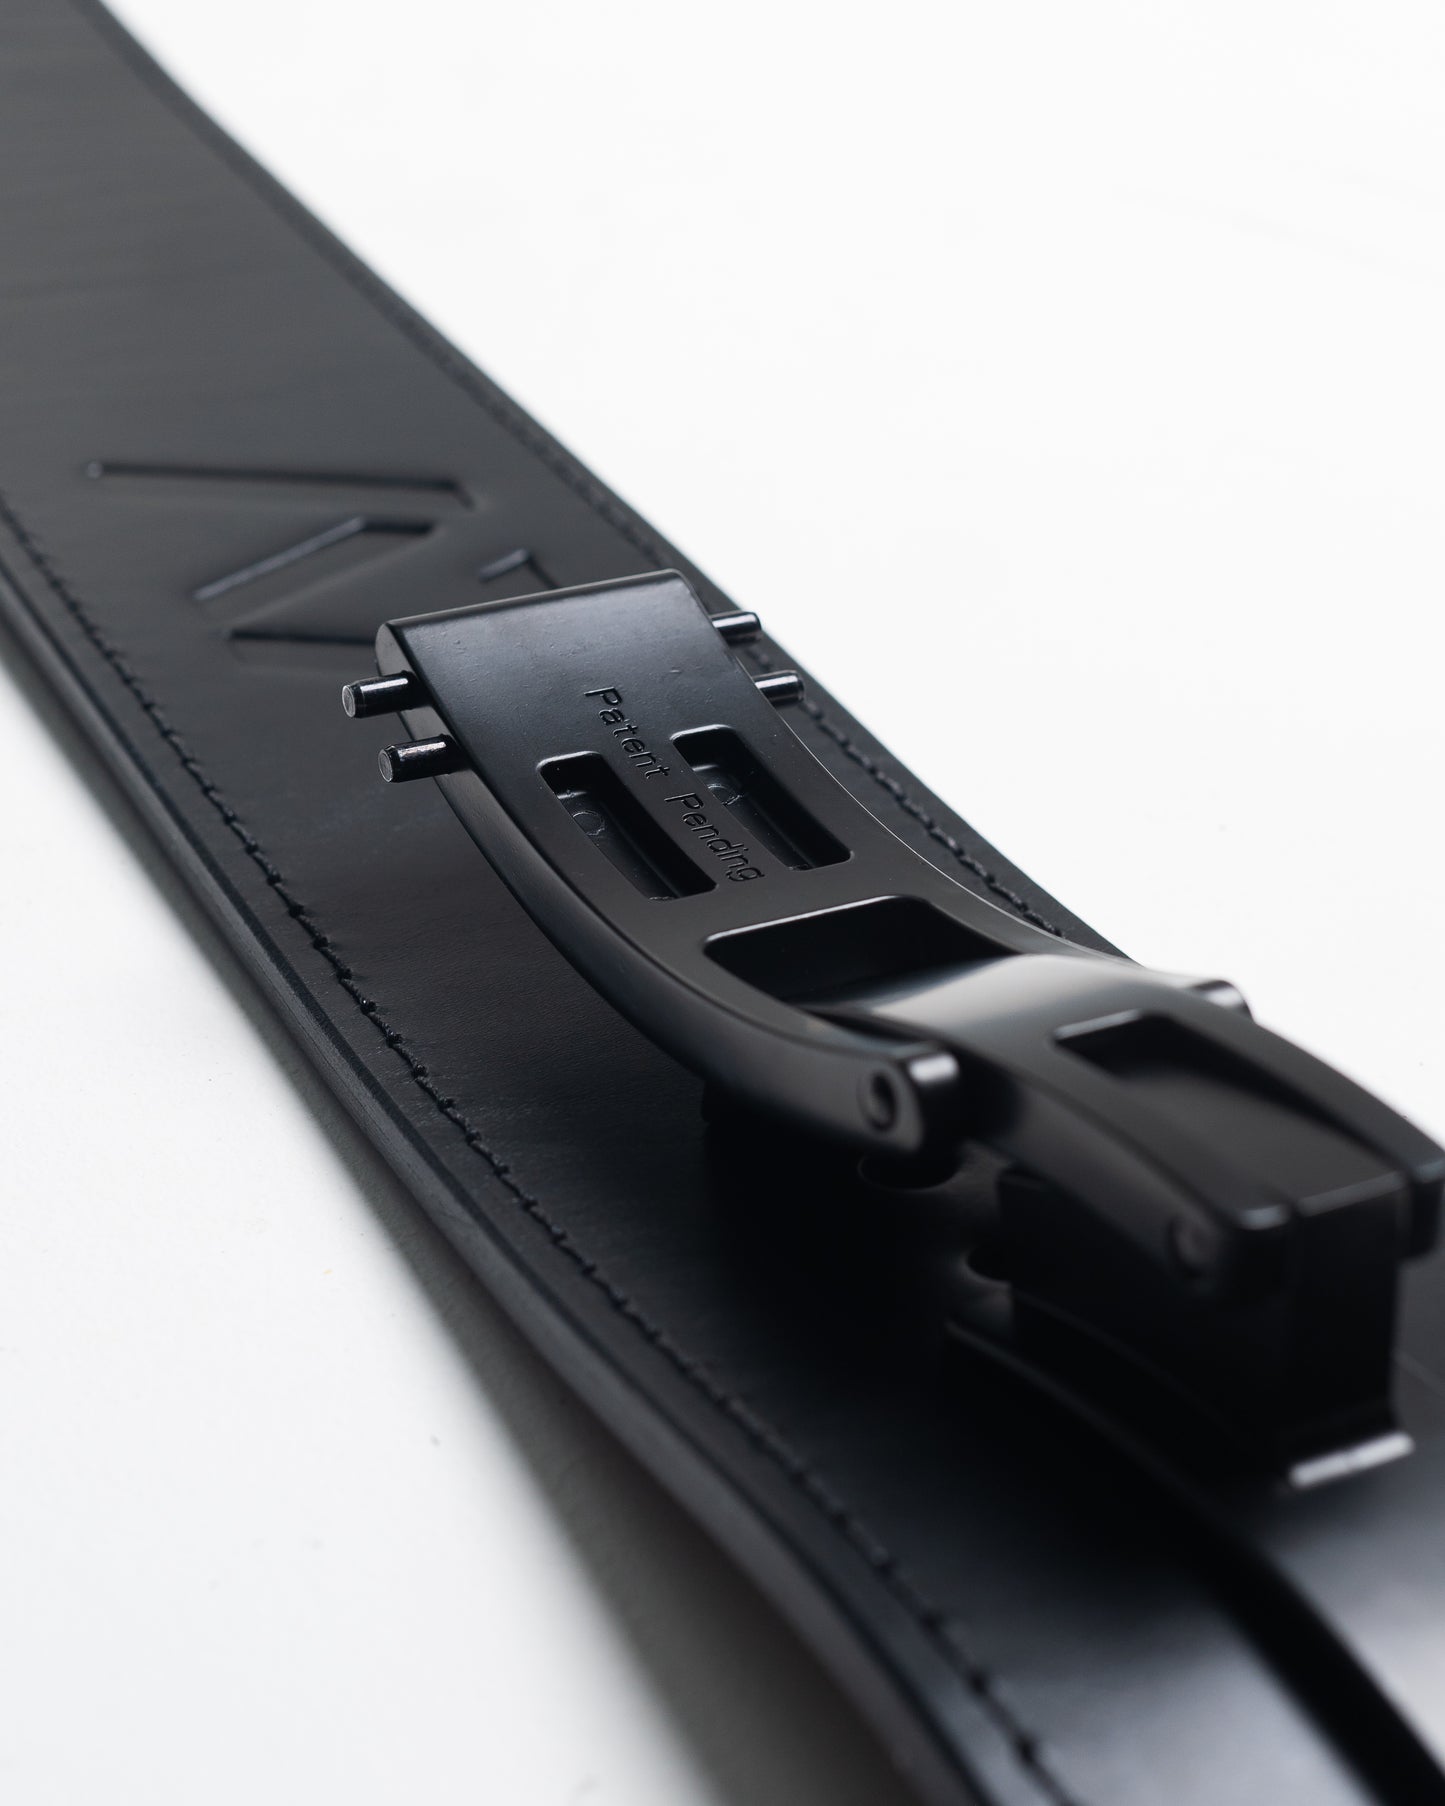 
                  
                    A7 PAL Lever Belt - Black - IPF Approved
                  
                